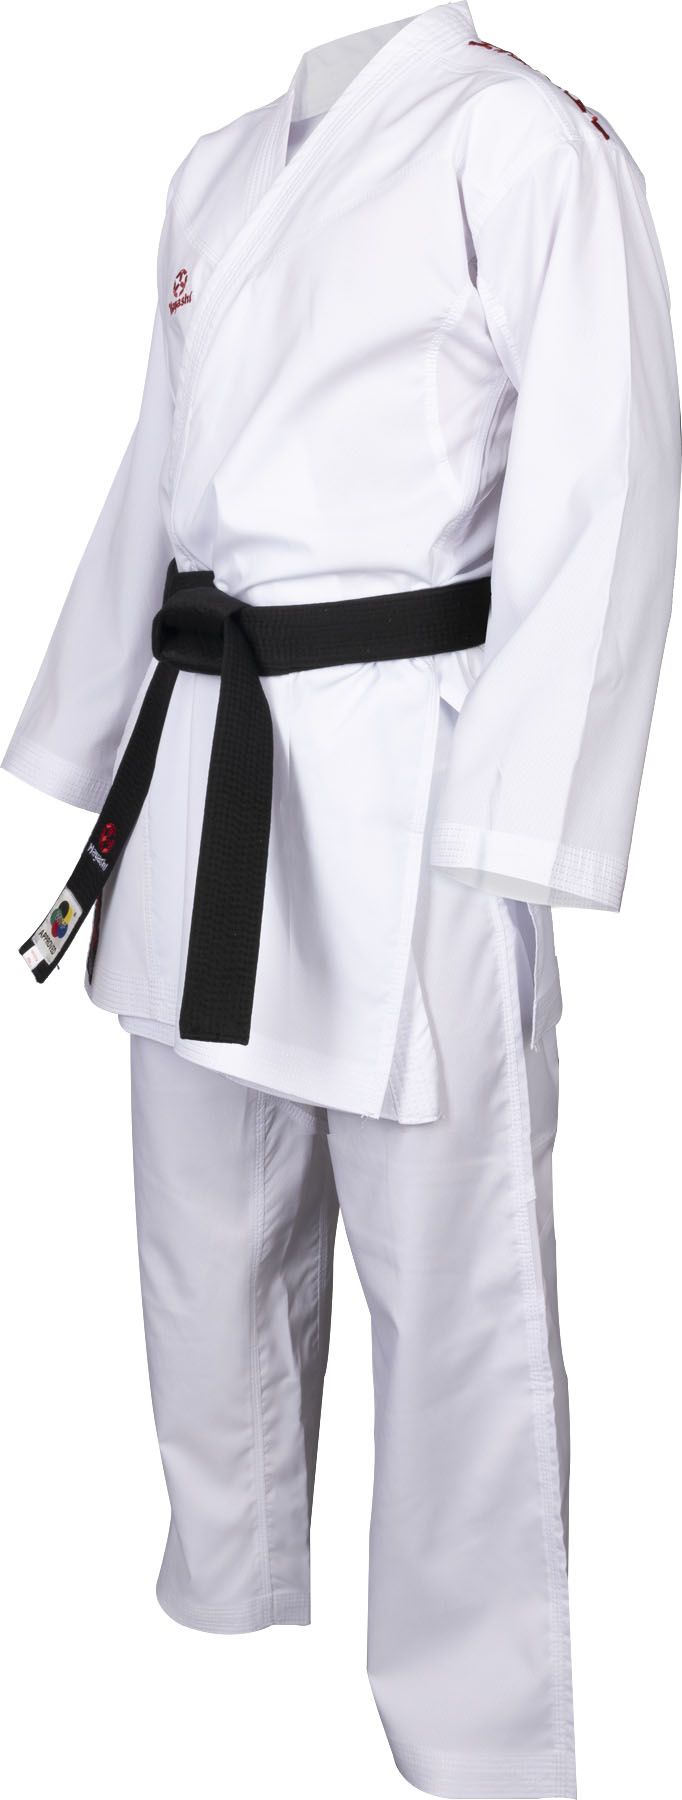 Hayashi kumite kimono Flexz WKF approved - Bílá/červená, 043-14